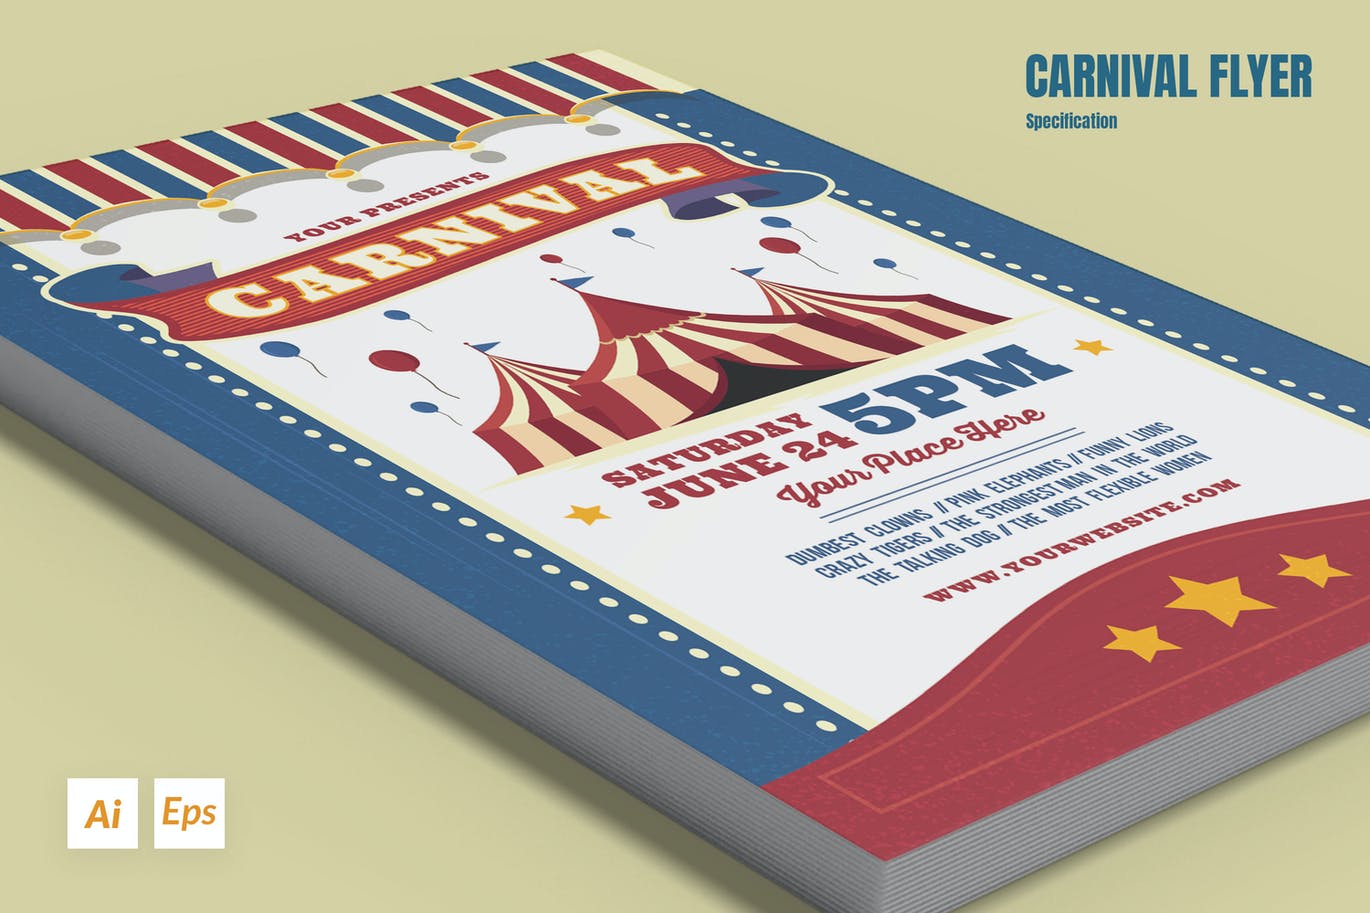 狂欢嘉年华宣传单模板 Carnival Flyer 设计素材 第1张